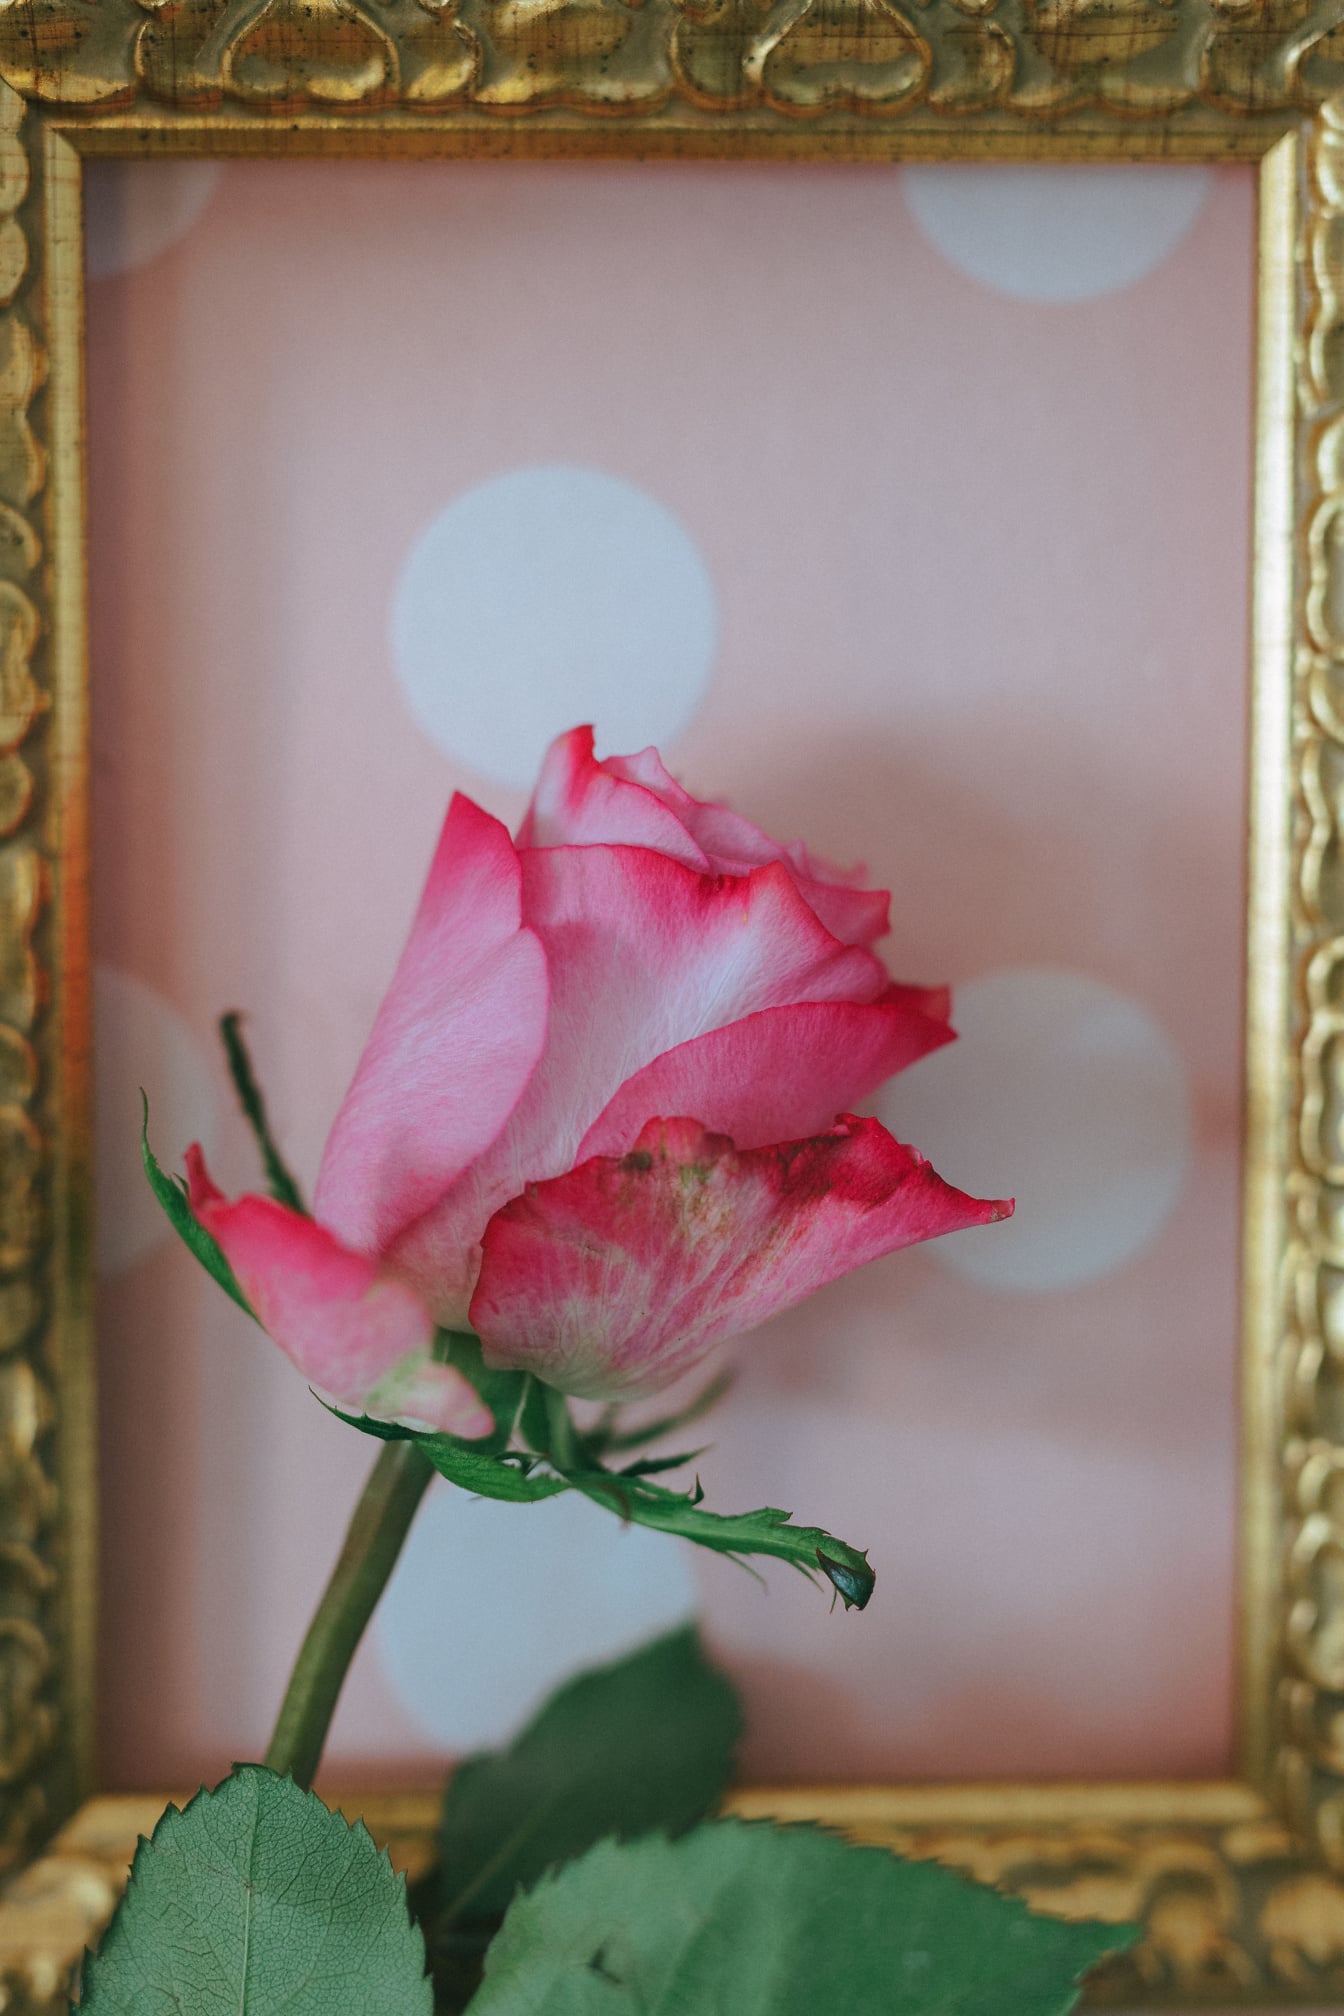 Foto kuncup mawar merah muda dengan bingkai kayu emas sebagai latar belakang